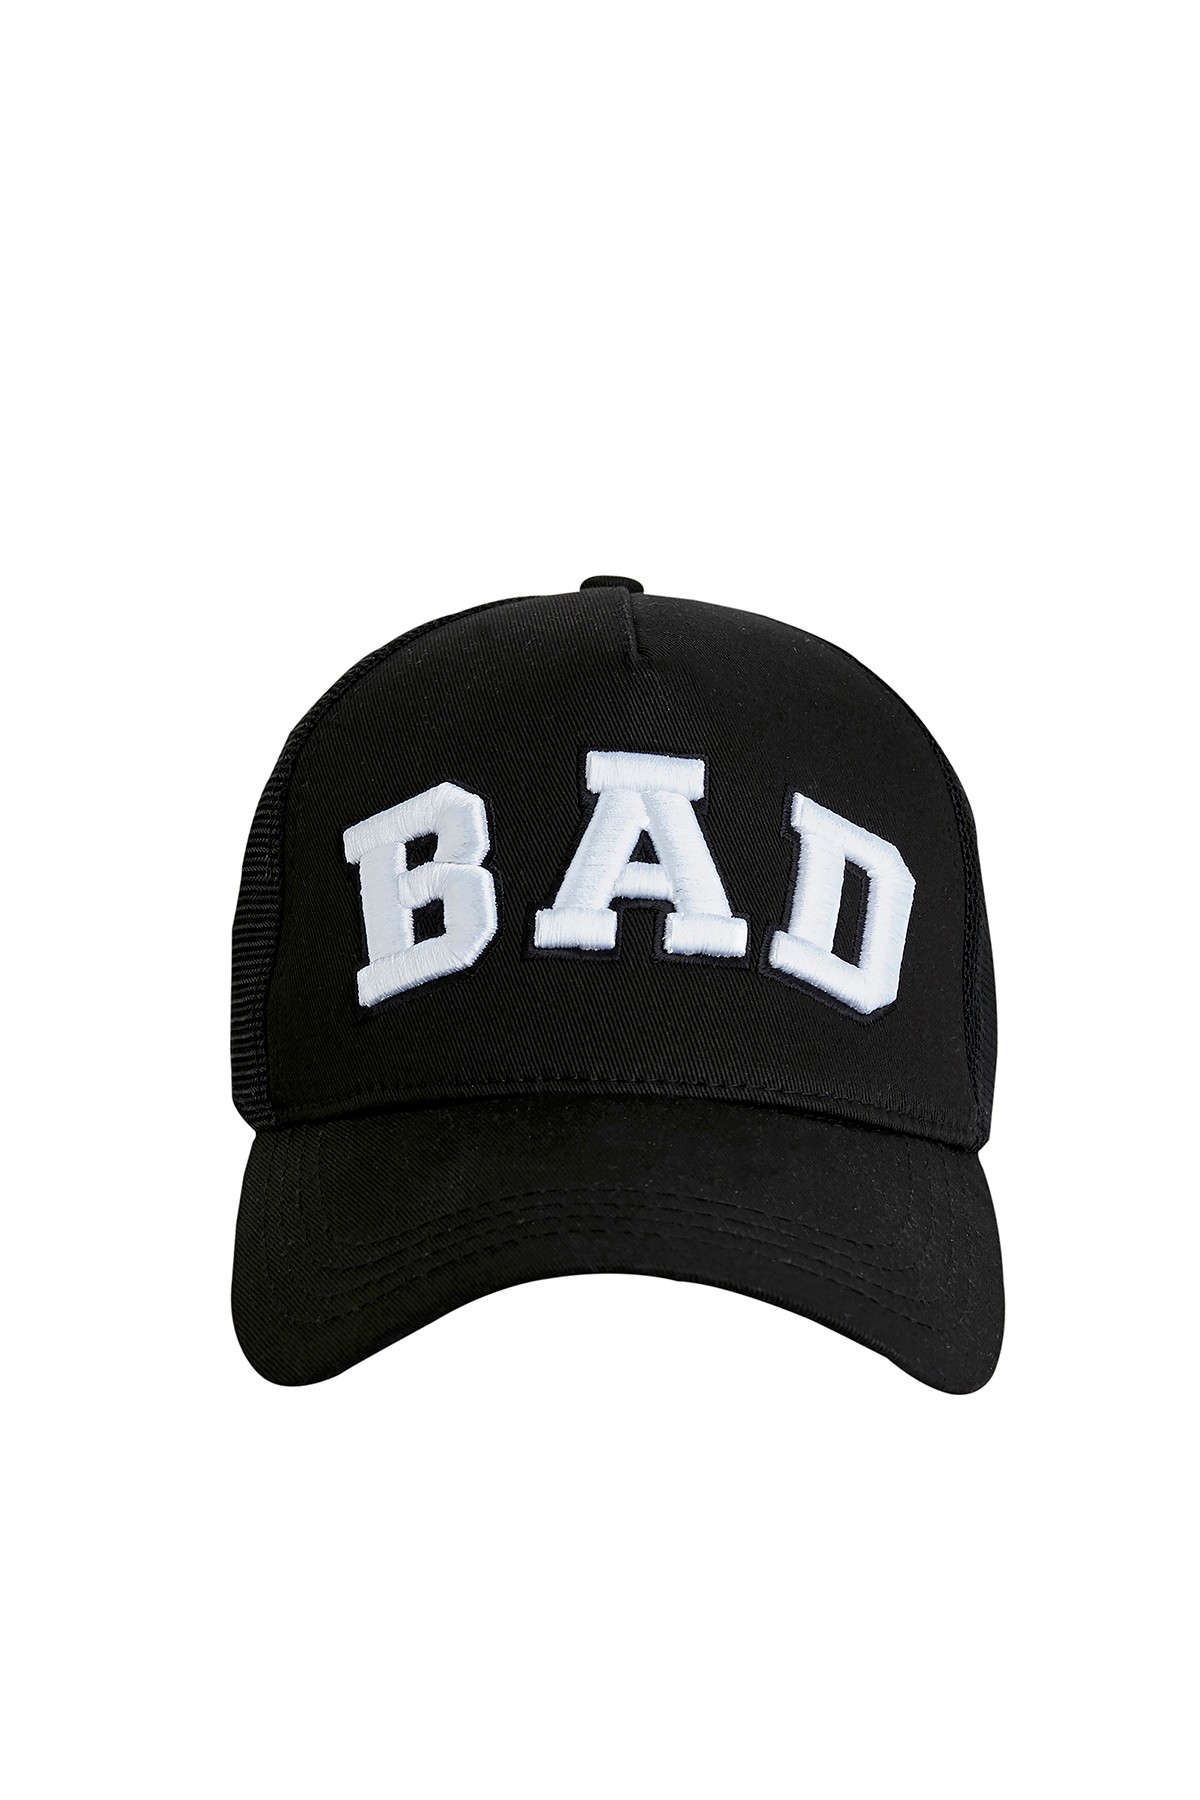 BAD BEAR - BAD CAP SİYAH 19.02.42.006